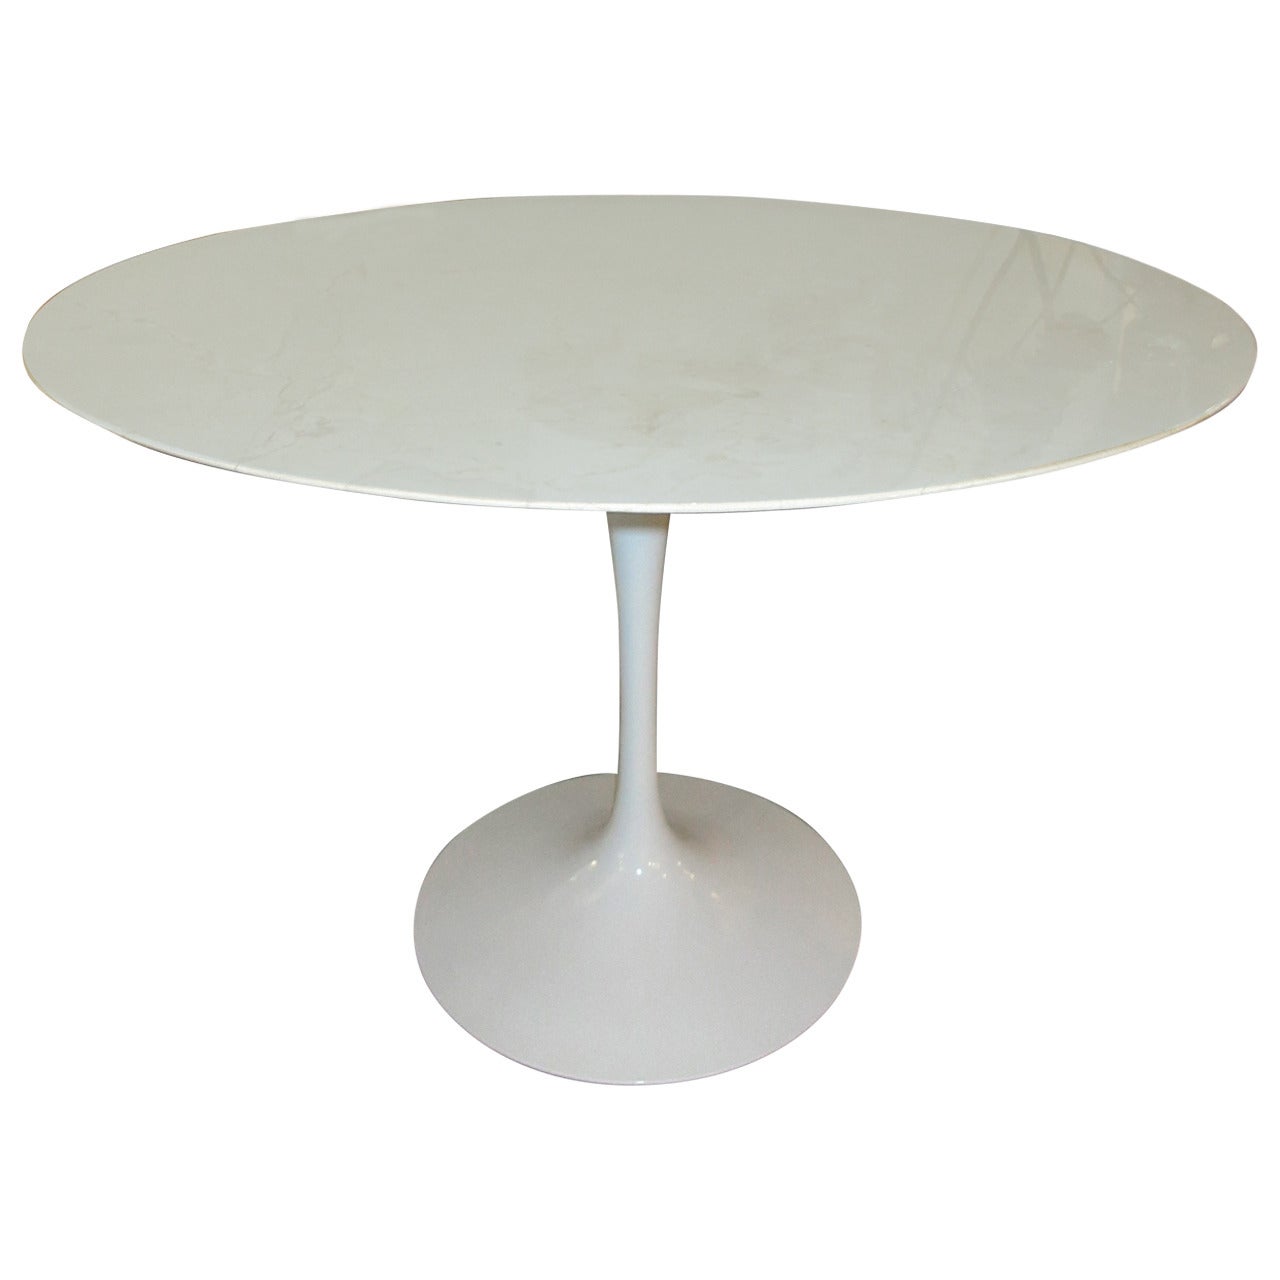 Eero Saarinen's Tulip Pedestal Table in Marble by Knoll